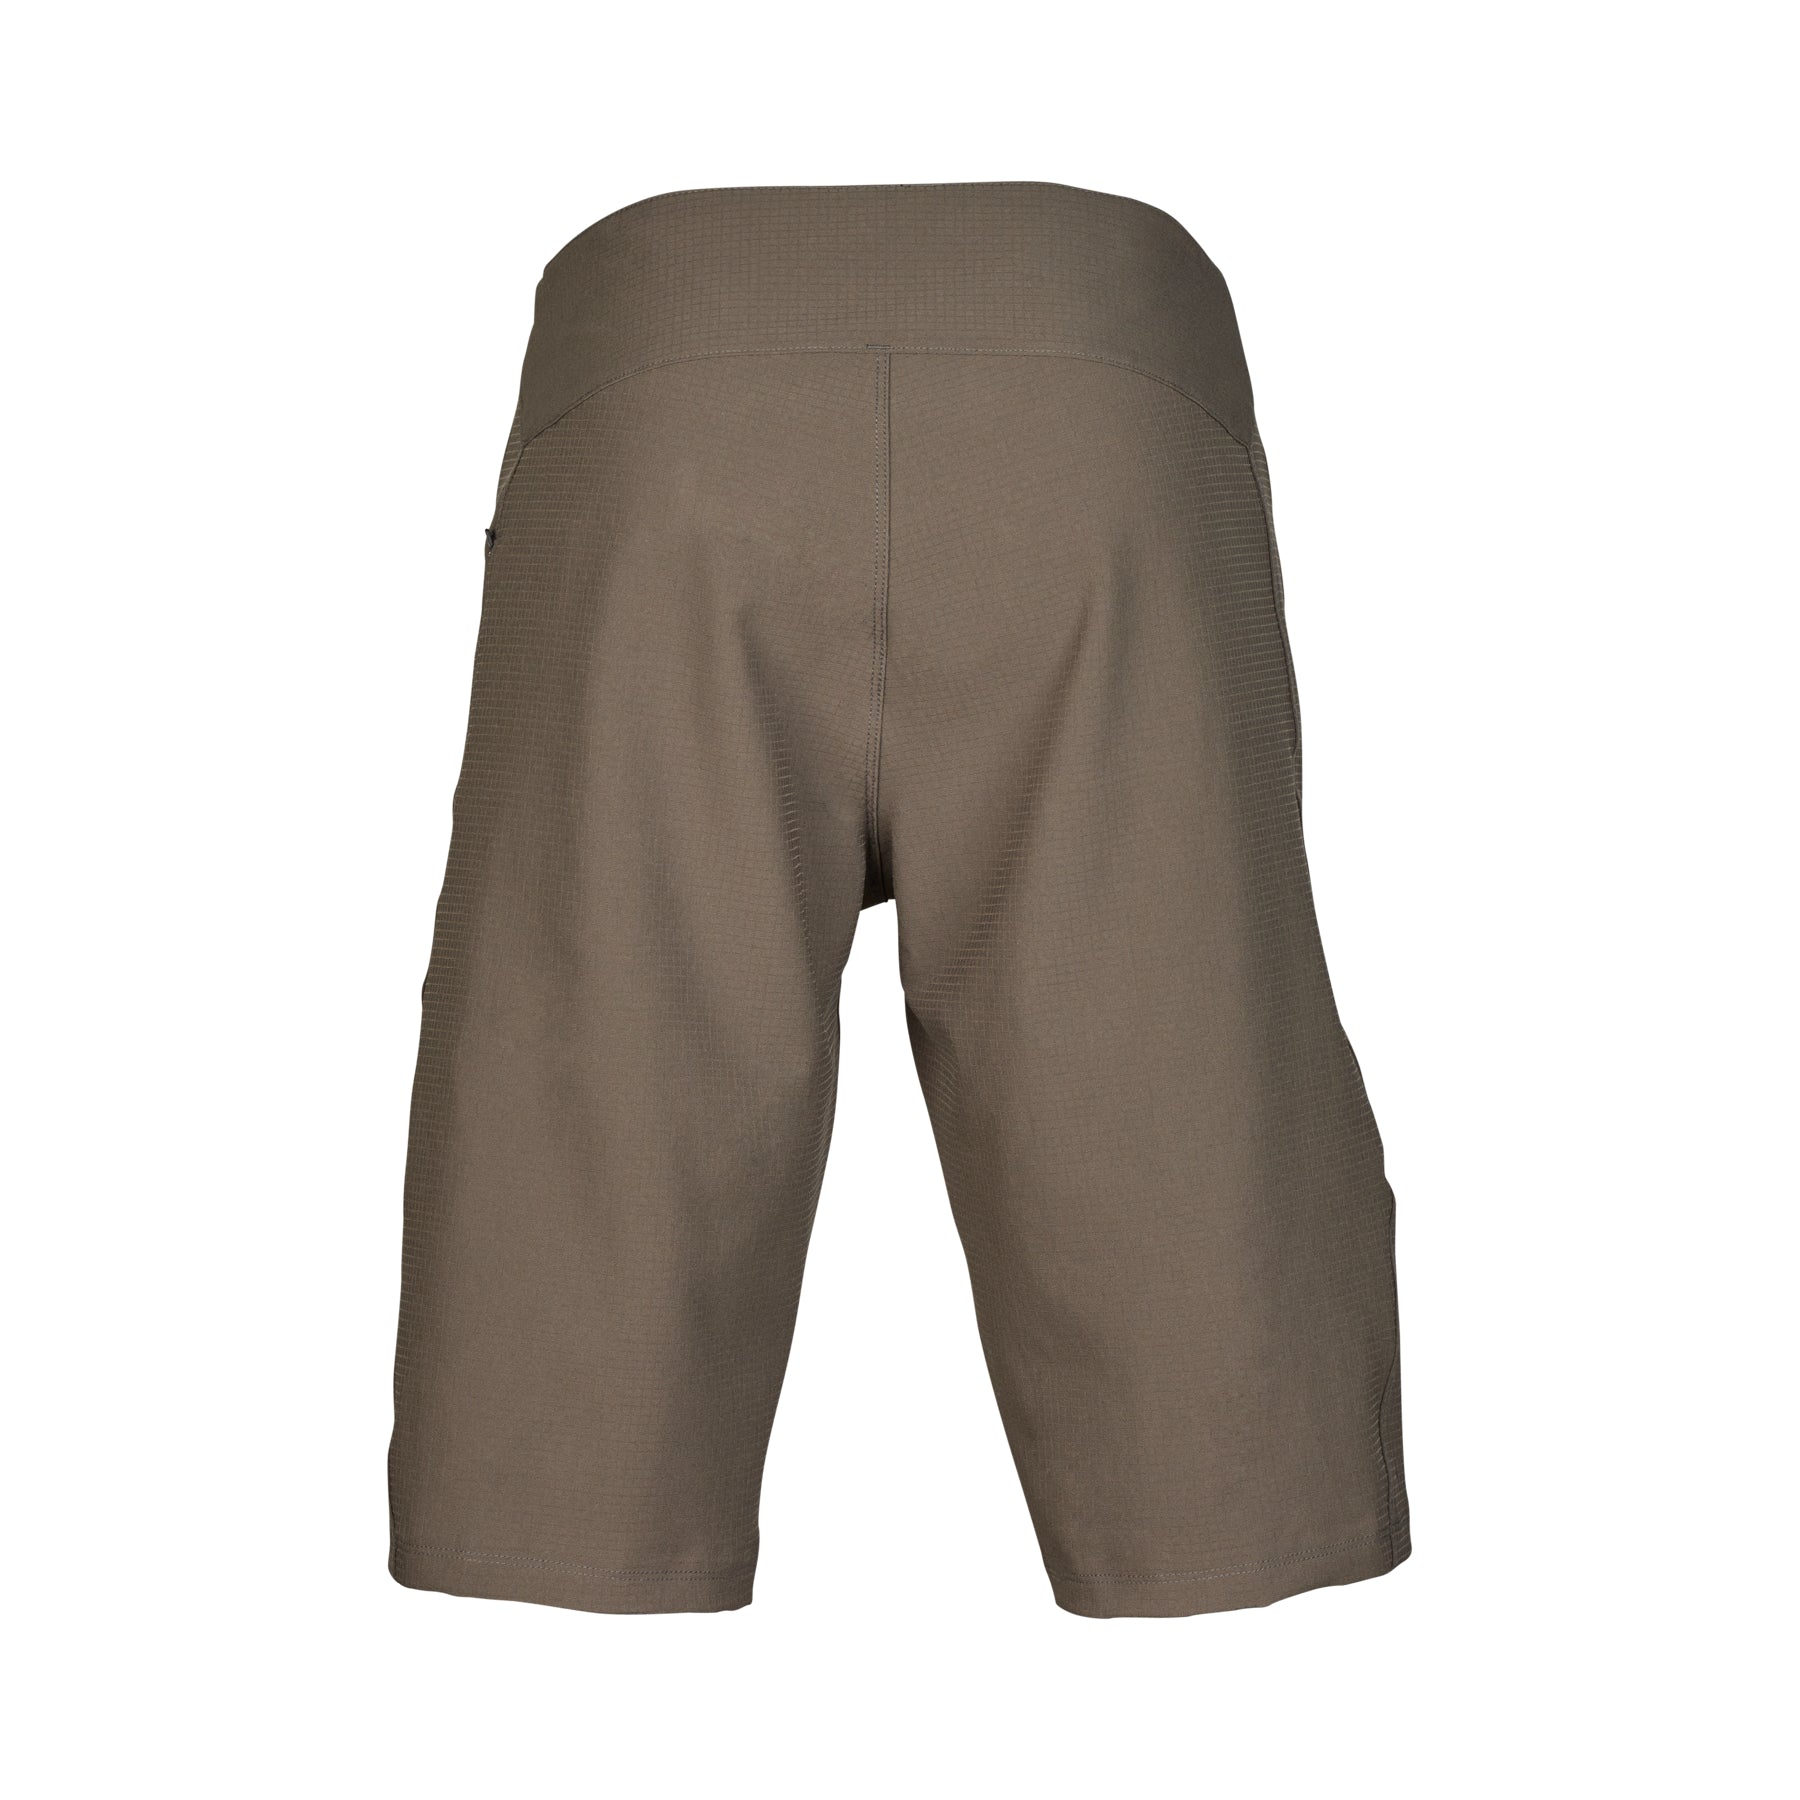 Fox Defend Shorts - L-34 - Dirt - Image 2